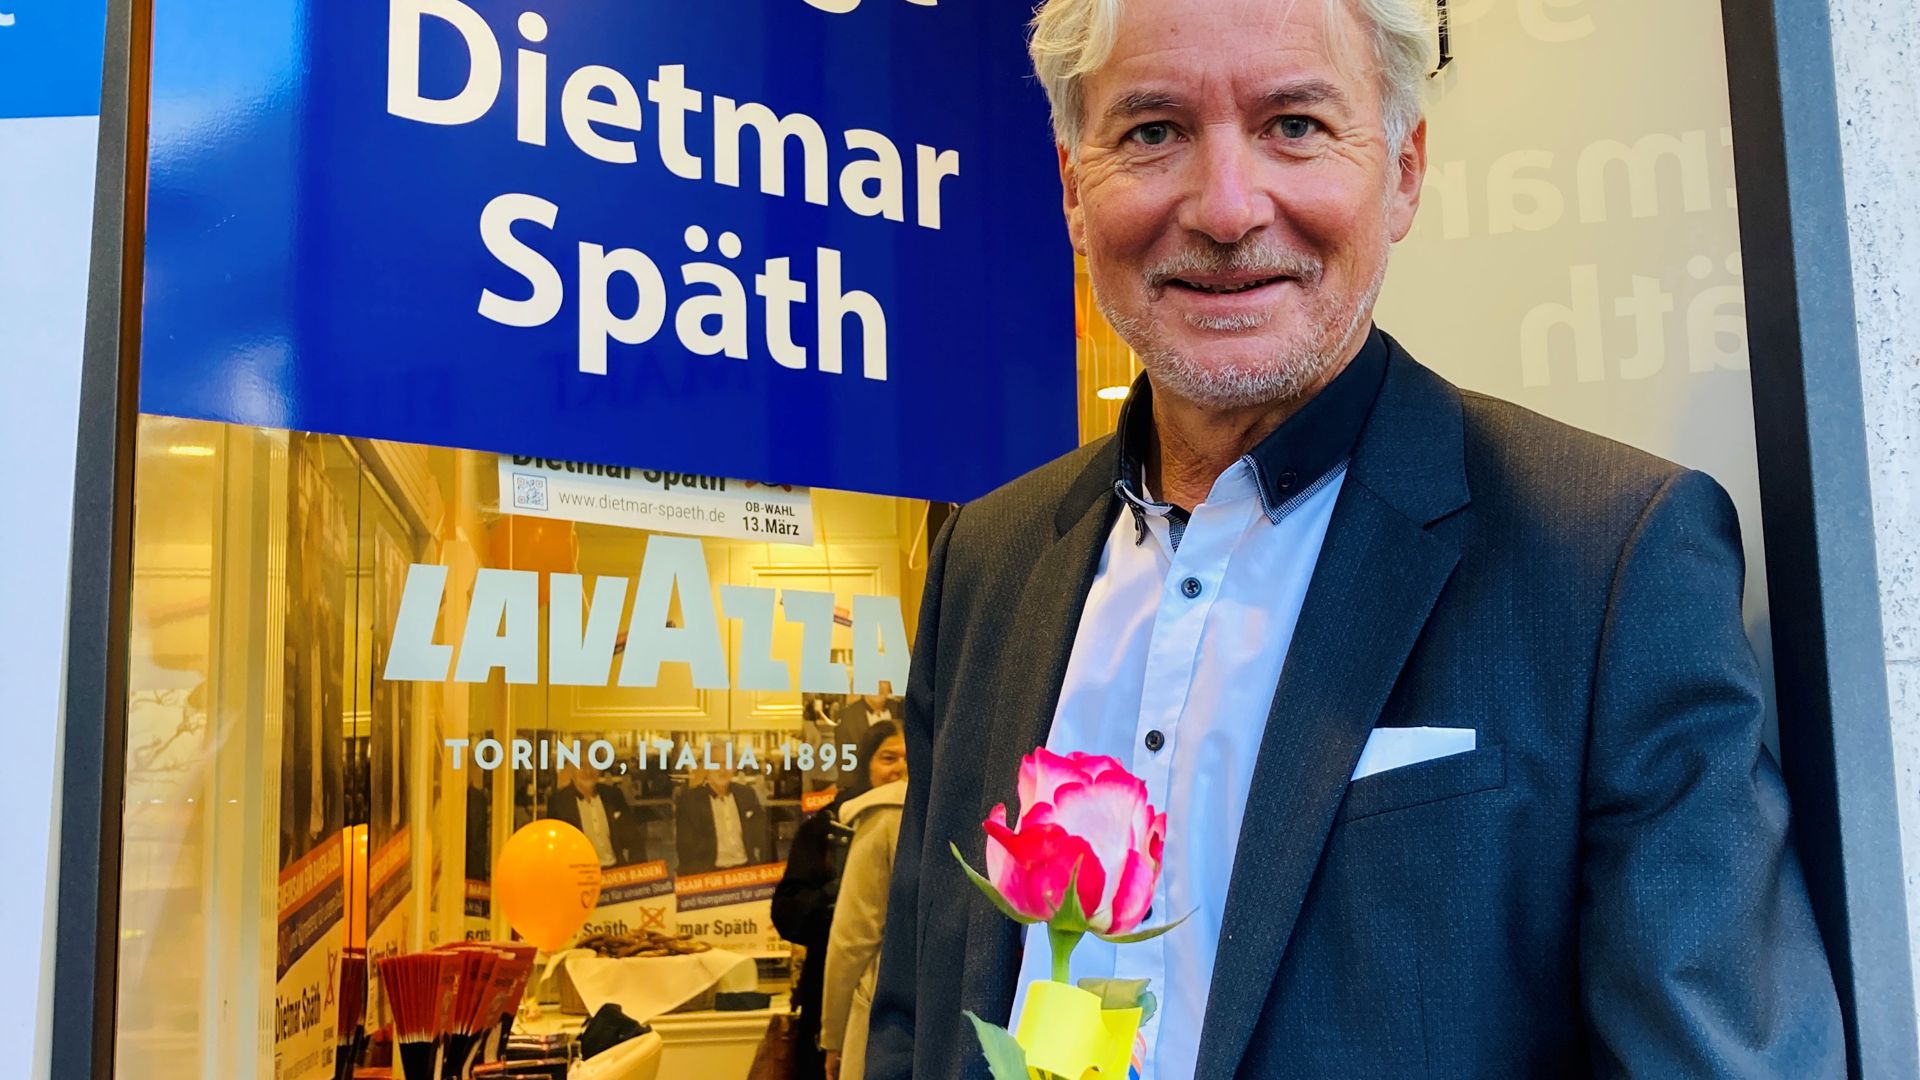  Der Muggensturmer Bürgermeister Dietmar Späth möchte Oberbürgermeister in Baden-Baden werden. In der Fußgängerzone hat er eine OB-Wahl-Lounge eröffnet. 